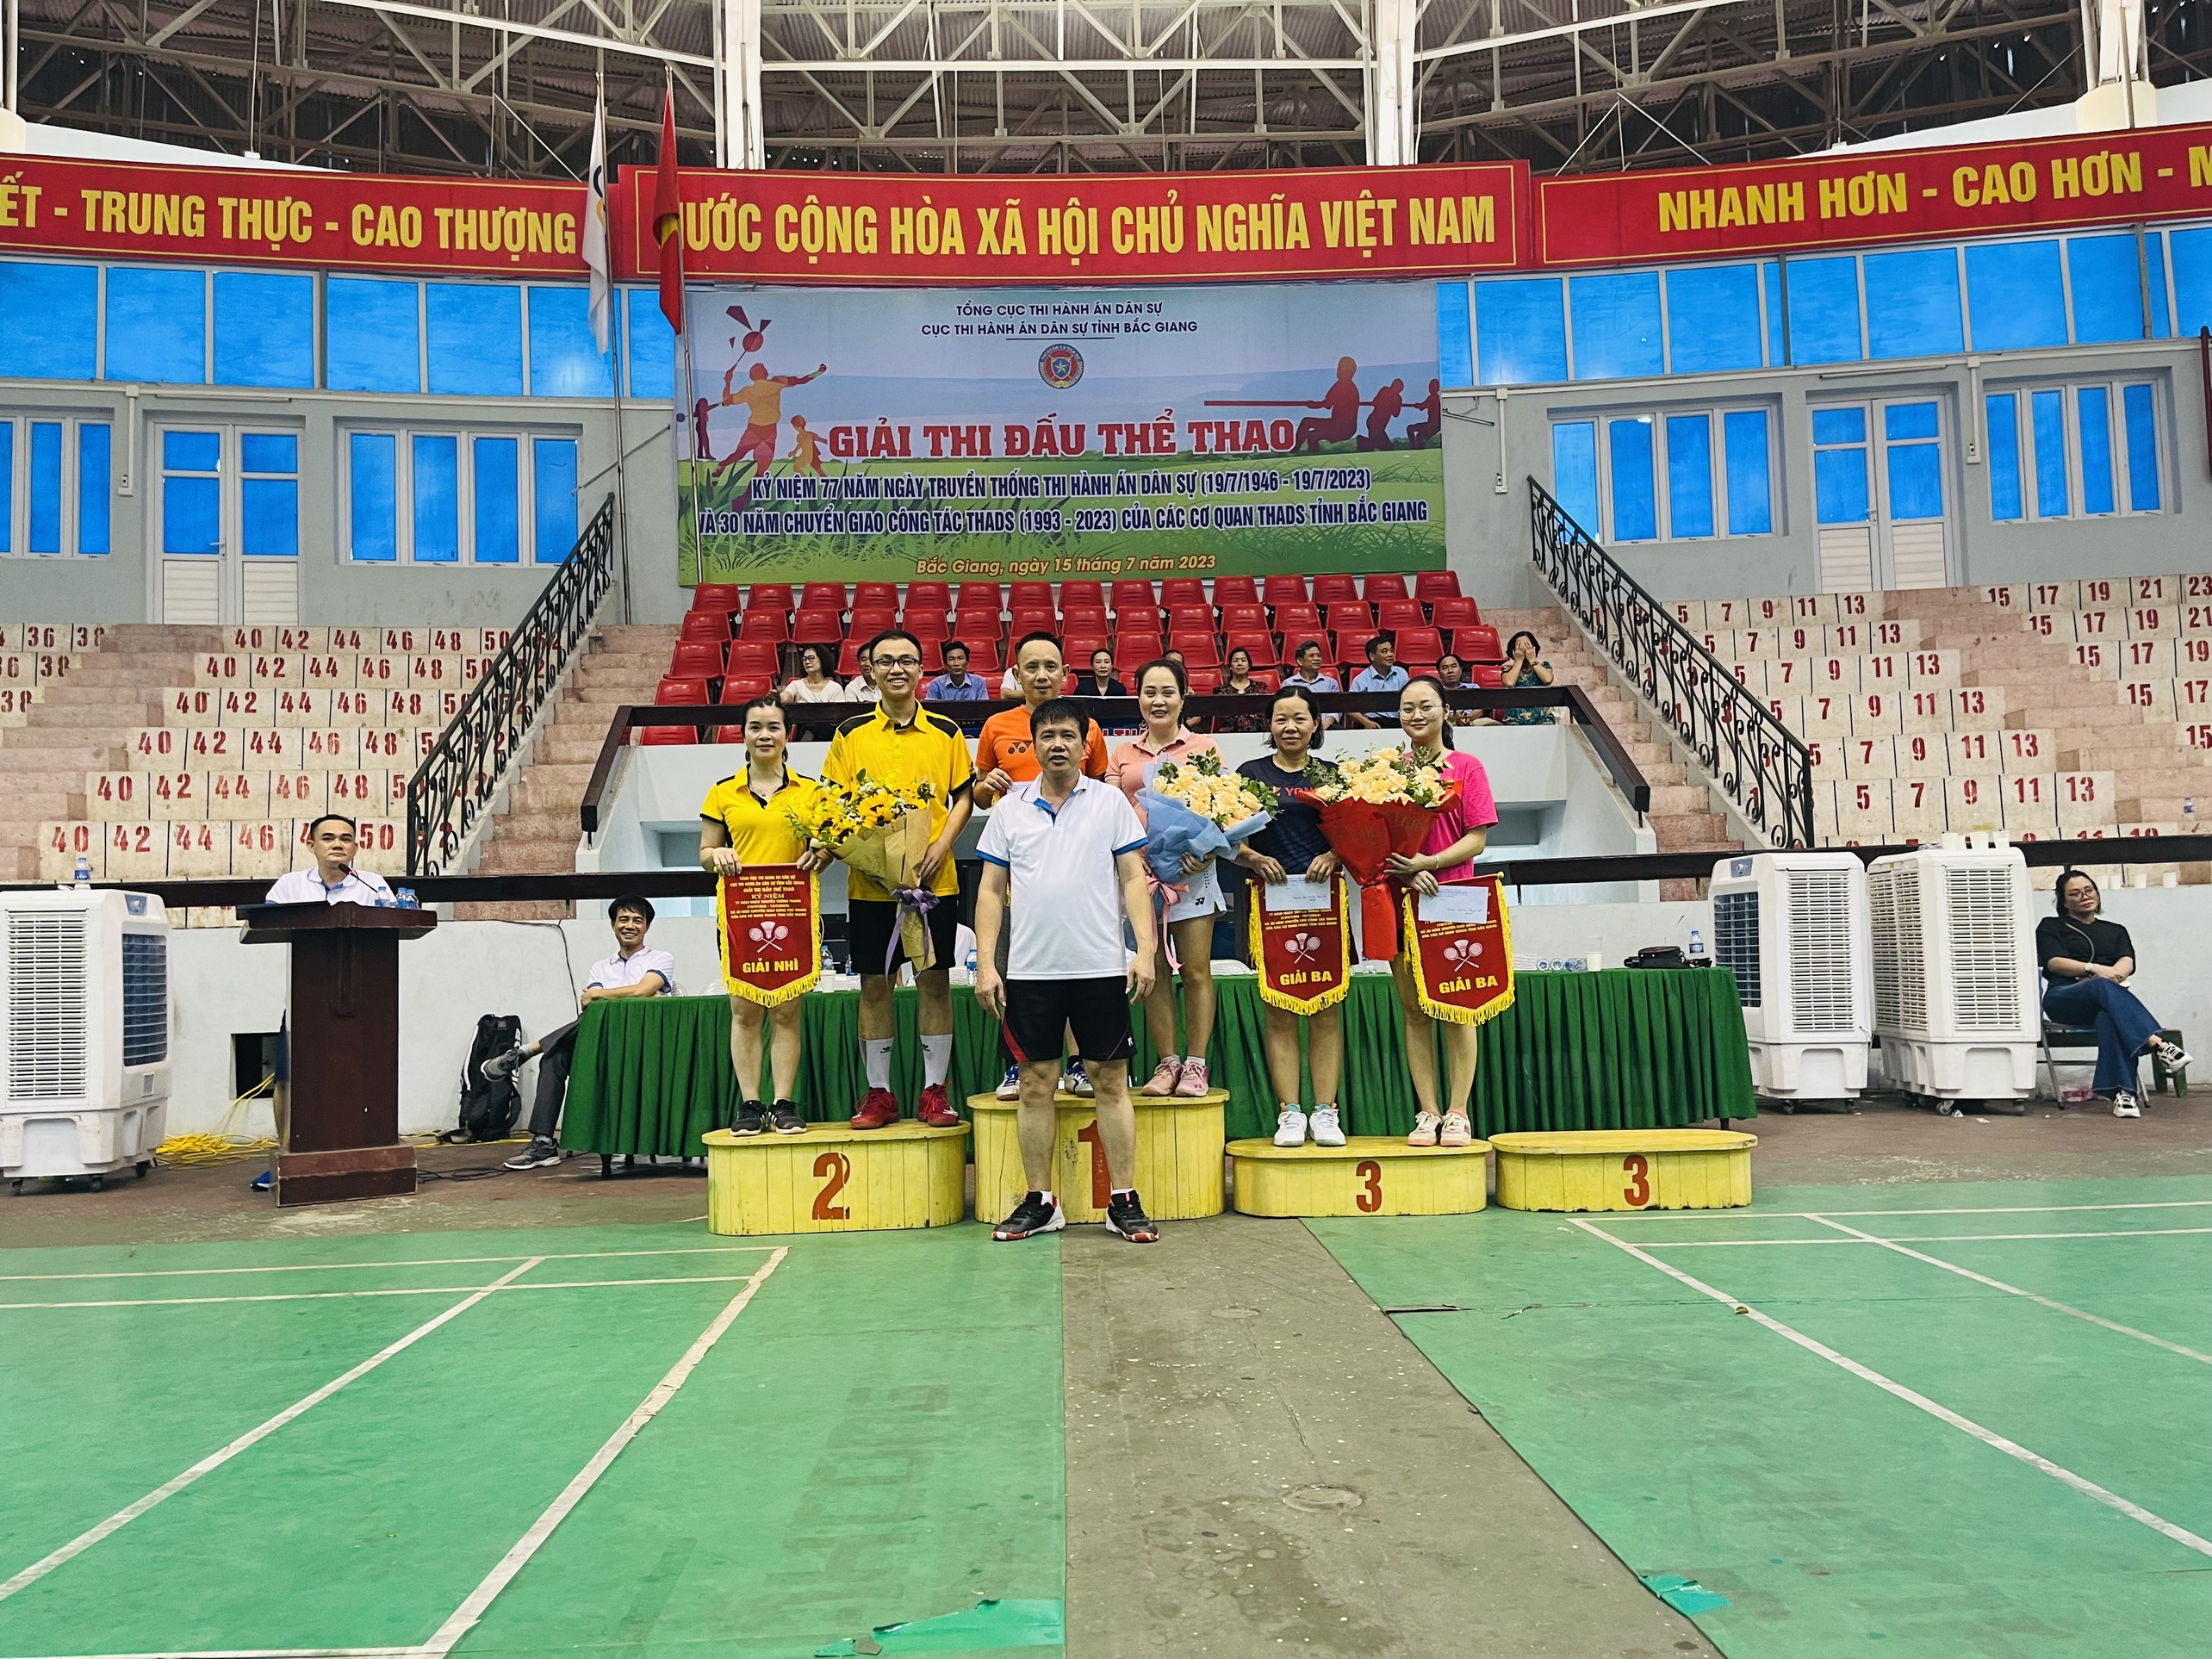 Cục THADS tỉnh Bắc Giang tổ chức giải thể thao truyền thống  Kỷ niệm 77 năm Ngày truyền thống THADS và 30 năm chuyển giao công tác THADS năm 2023